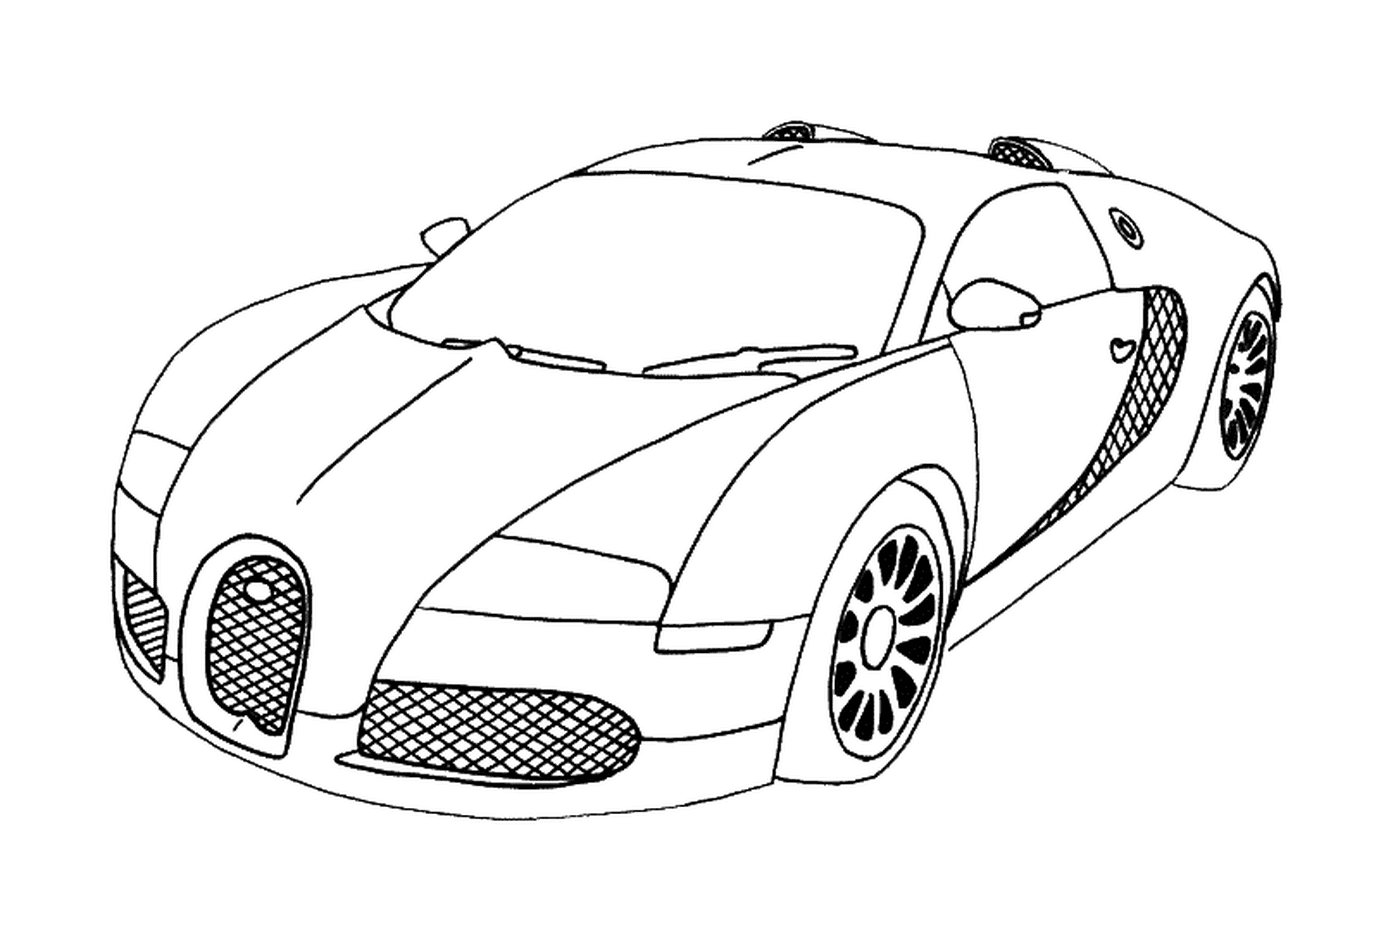  Bugatti for colouring 